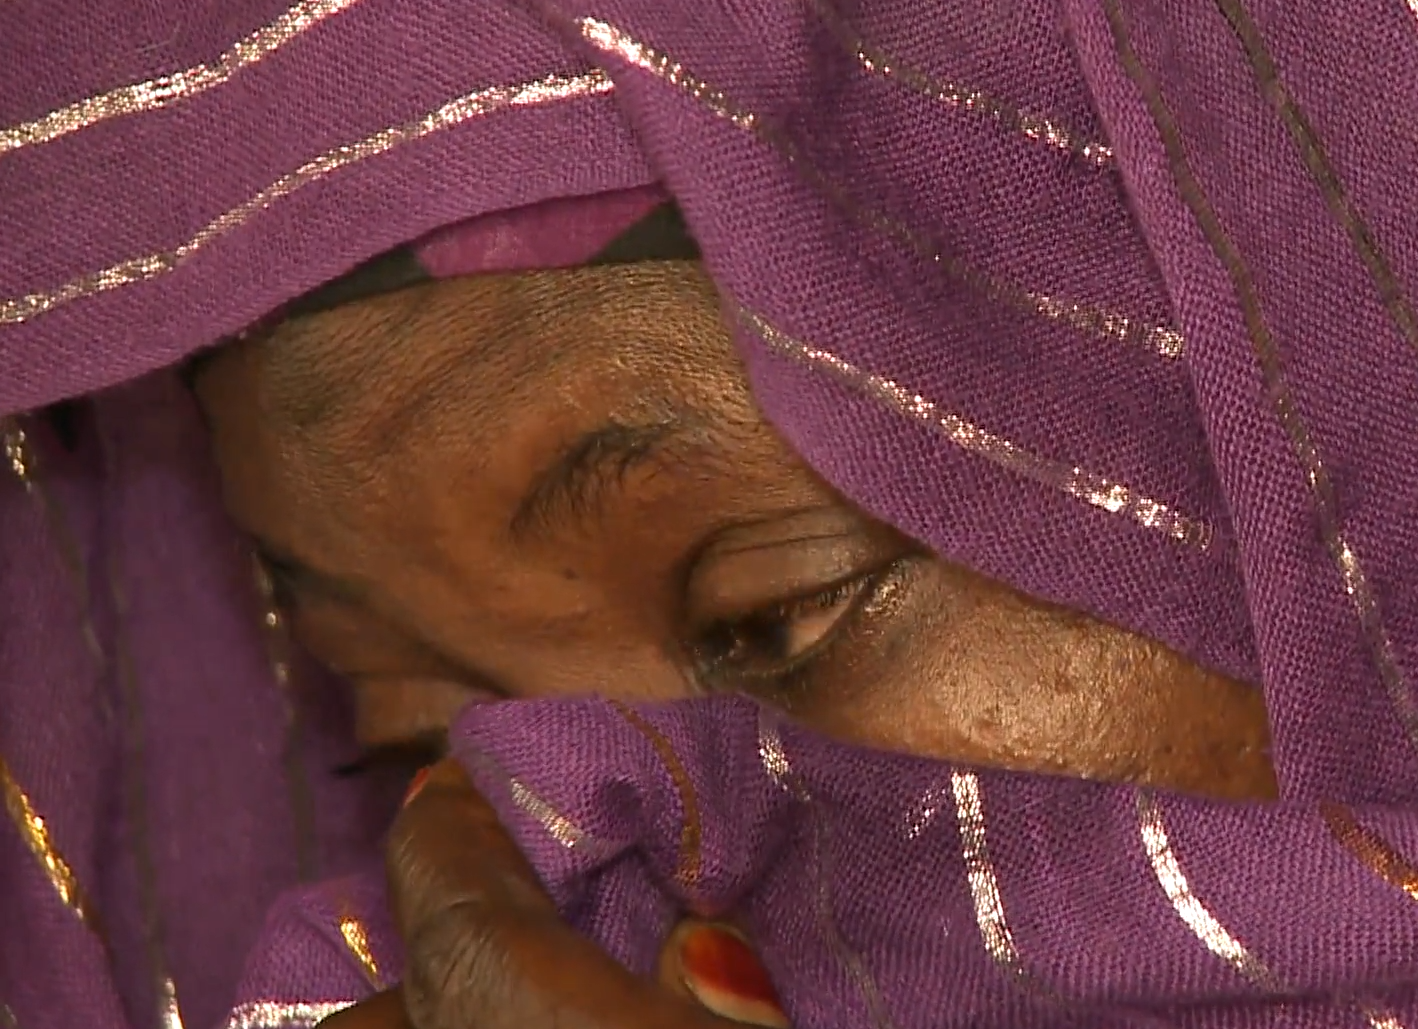 gros plan sur le regard d'une femme, capture extraite du film Lyon Conakry